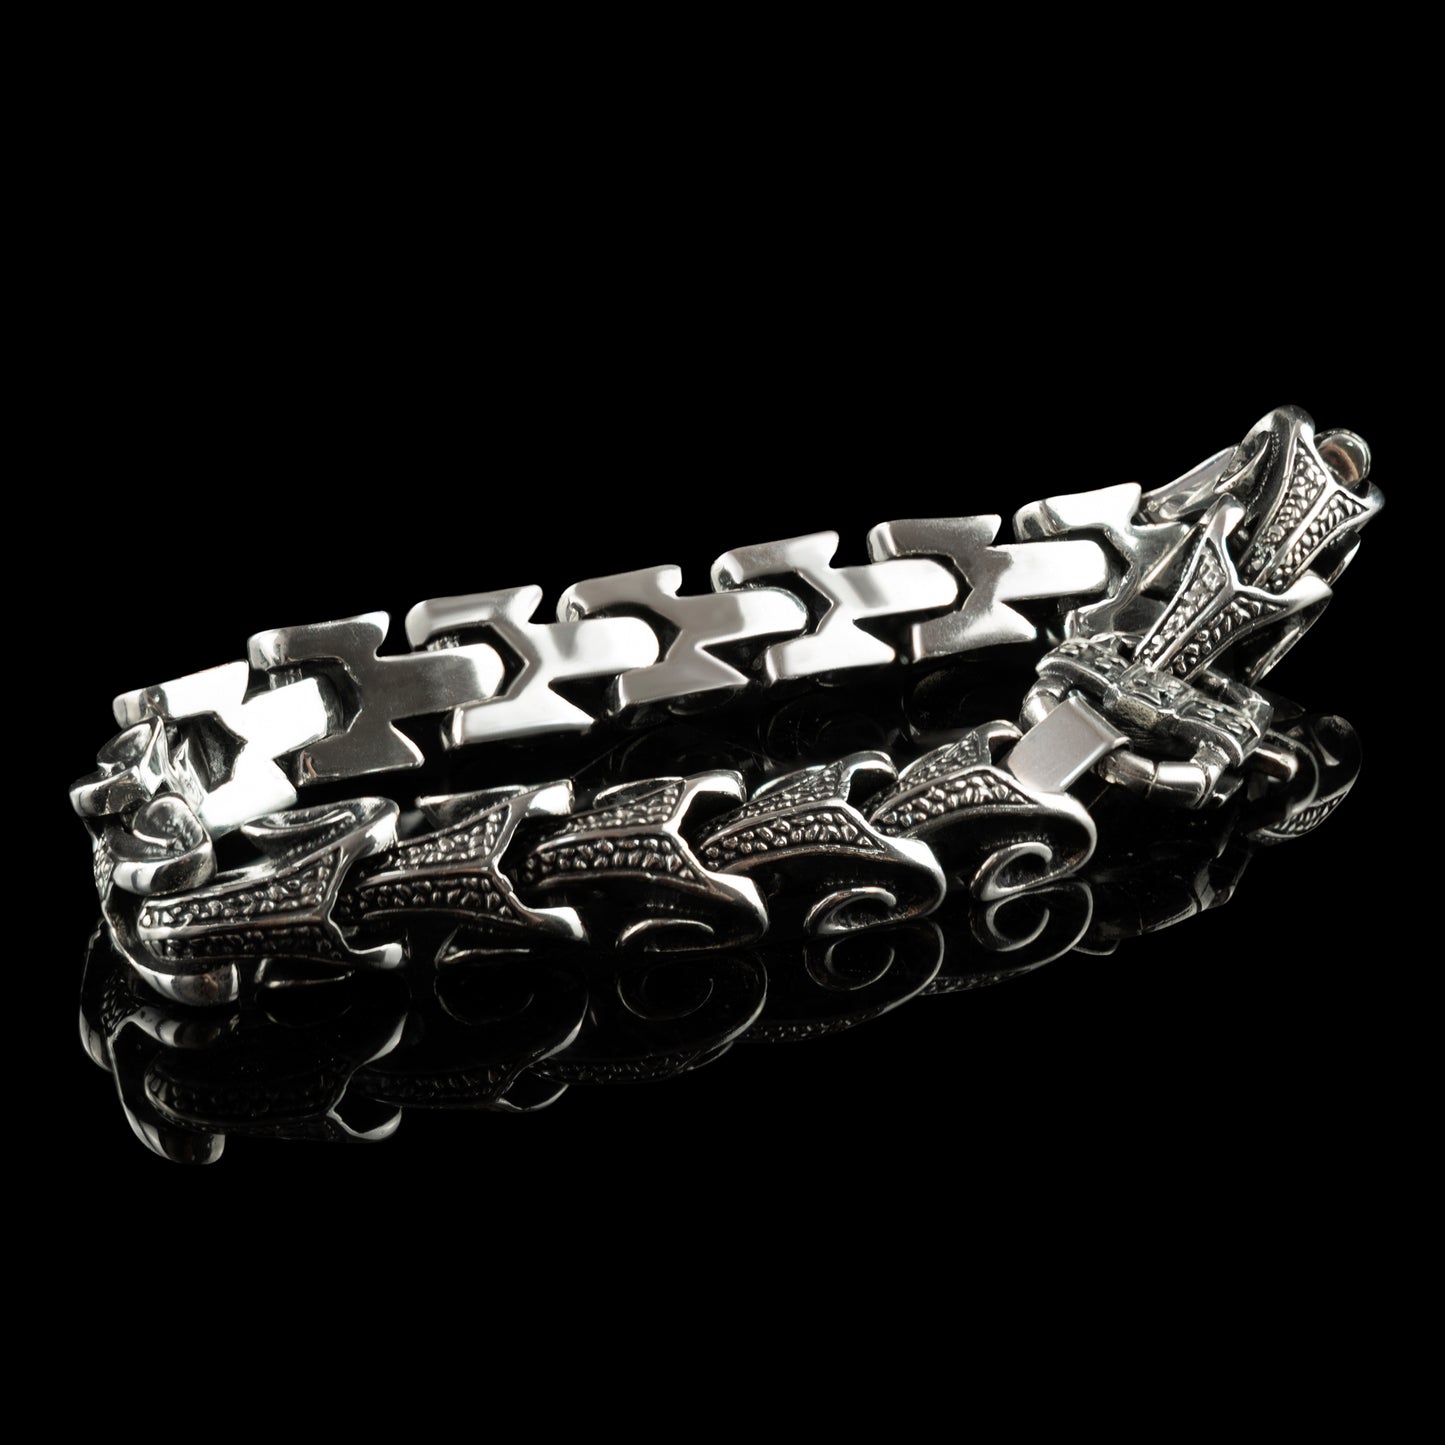 Bruralist silver chain bracelet Biker jewelry Biker bracelet